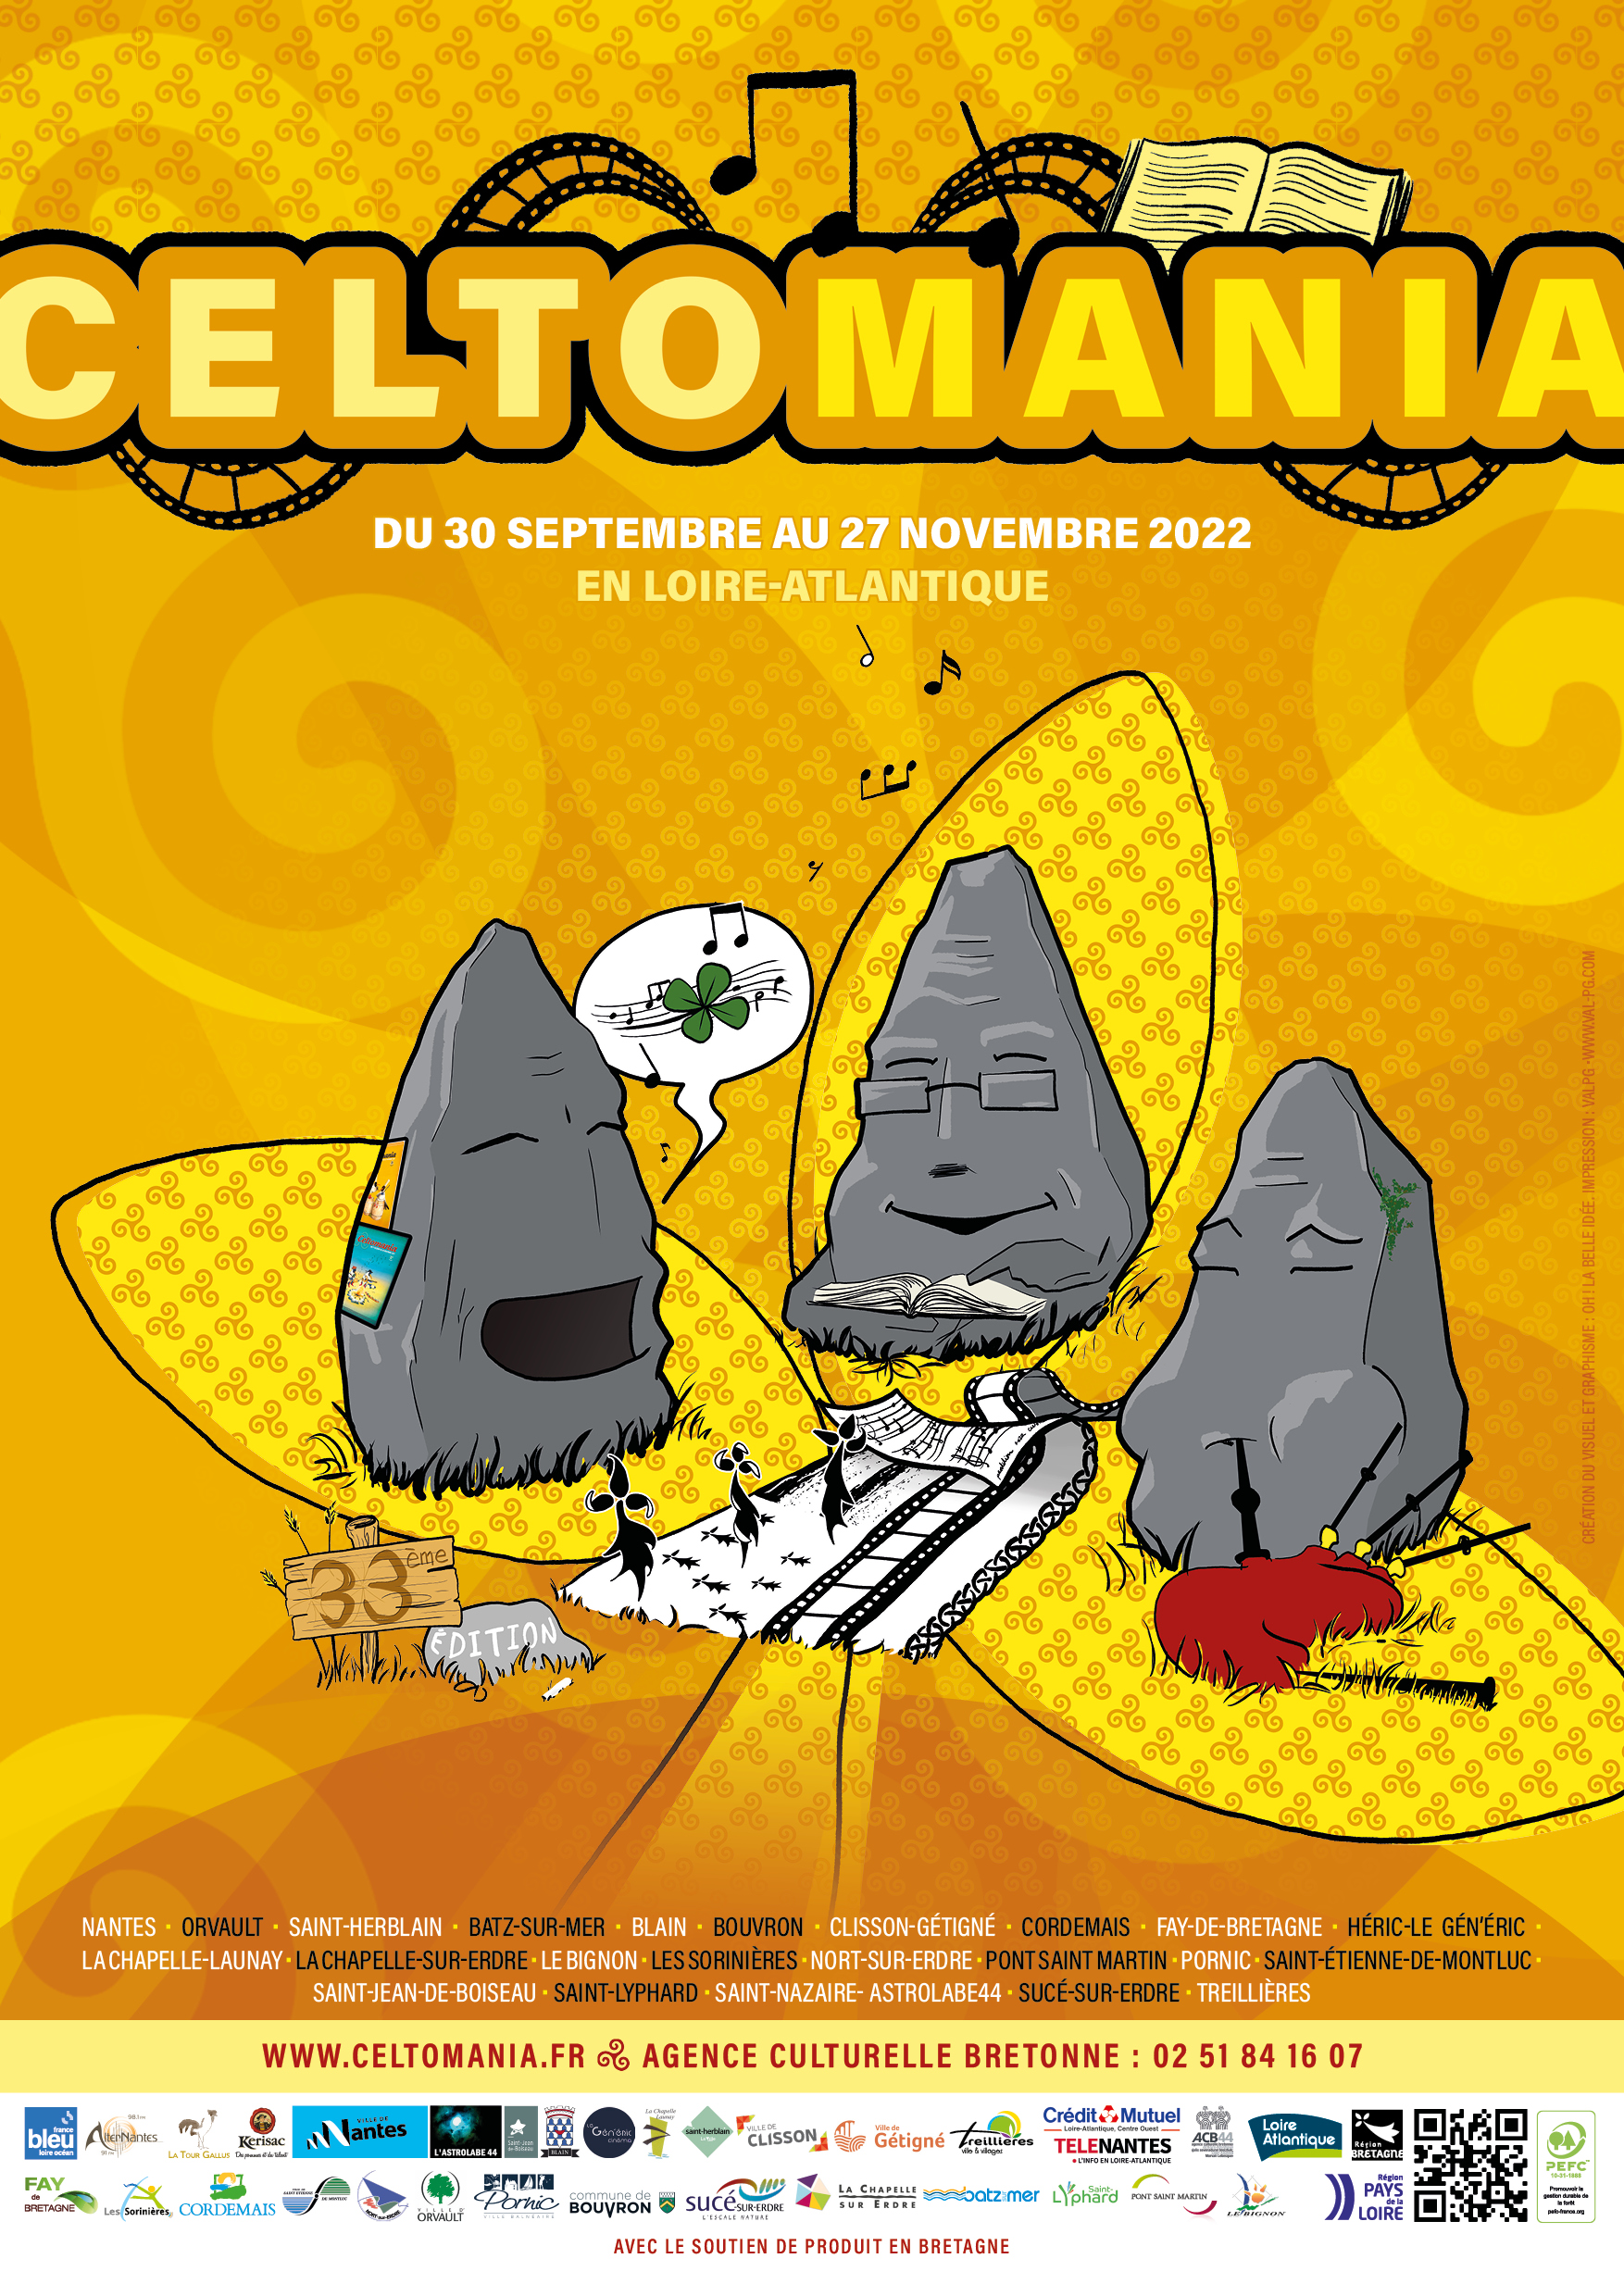 La 33ème édition des Celtomania